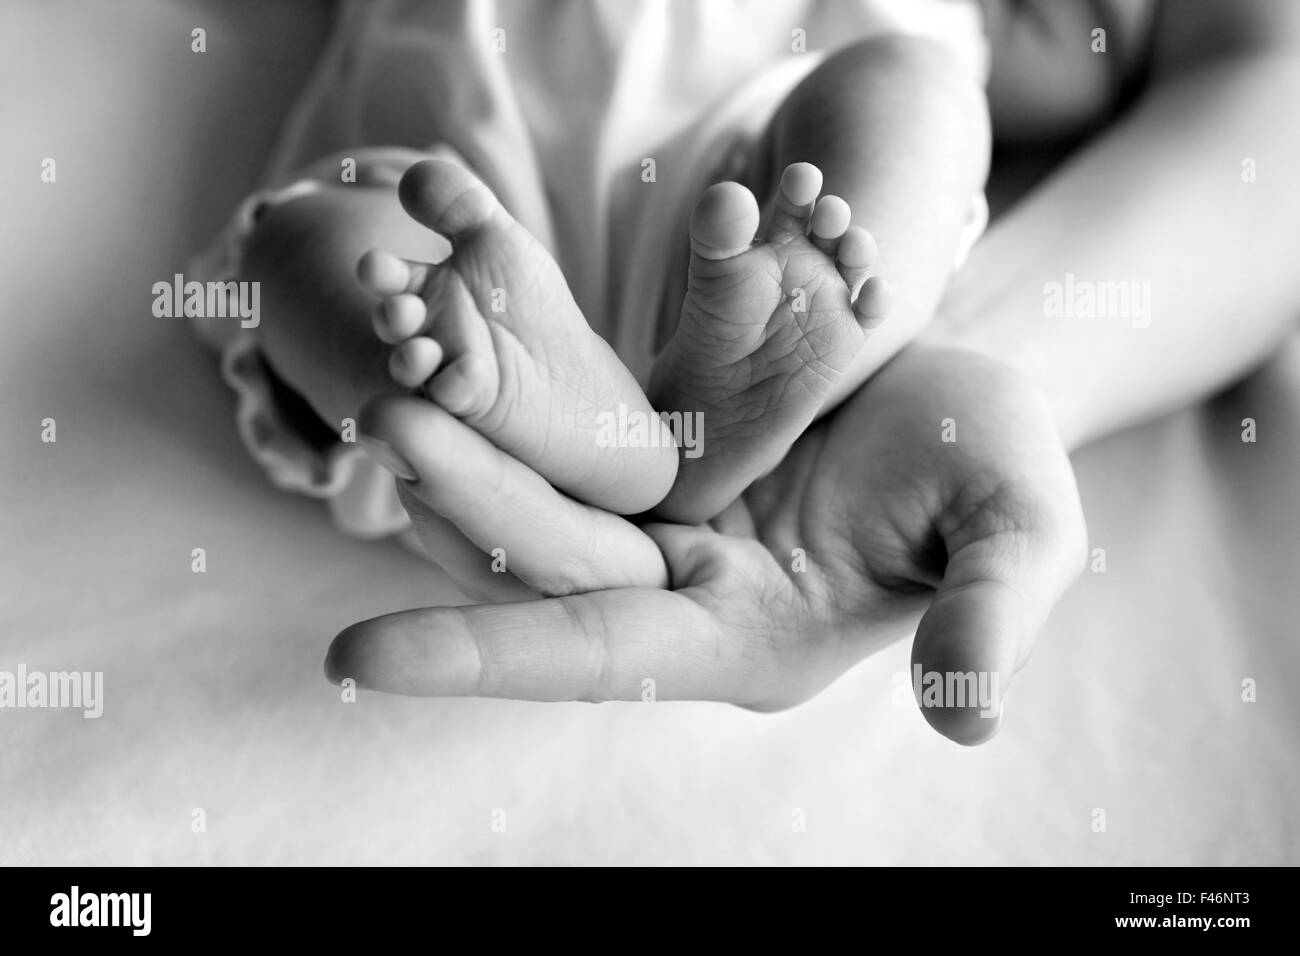 Целую ноги мамы. Мама целует ножки малышу. Целование ног детей. Поцелуй ножки малыша. Ребенок целует ноги маме.